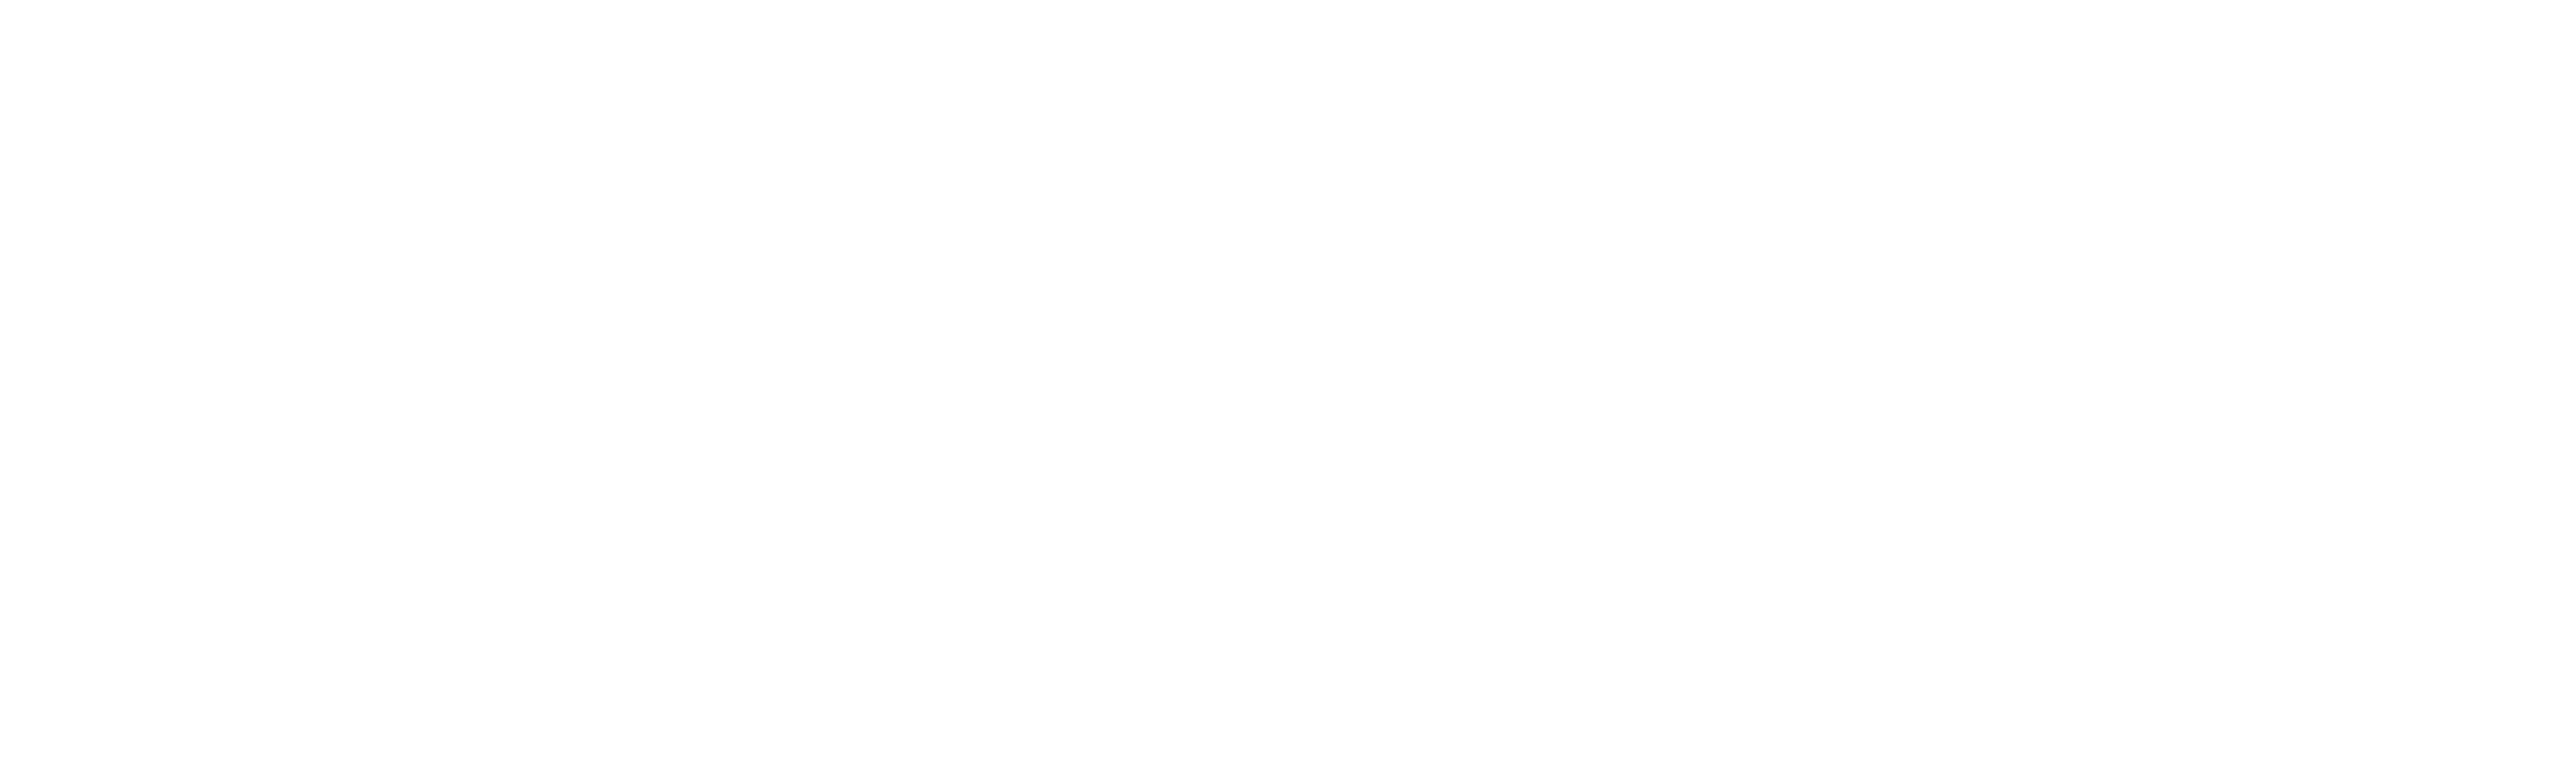 Trackers logo